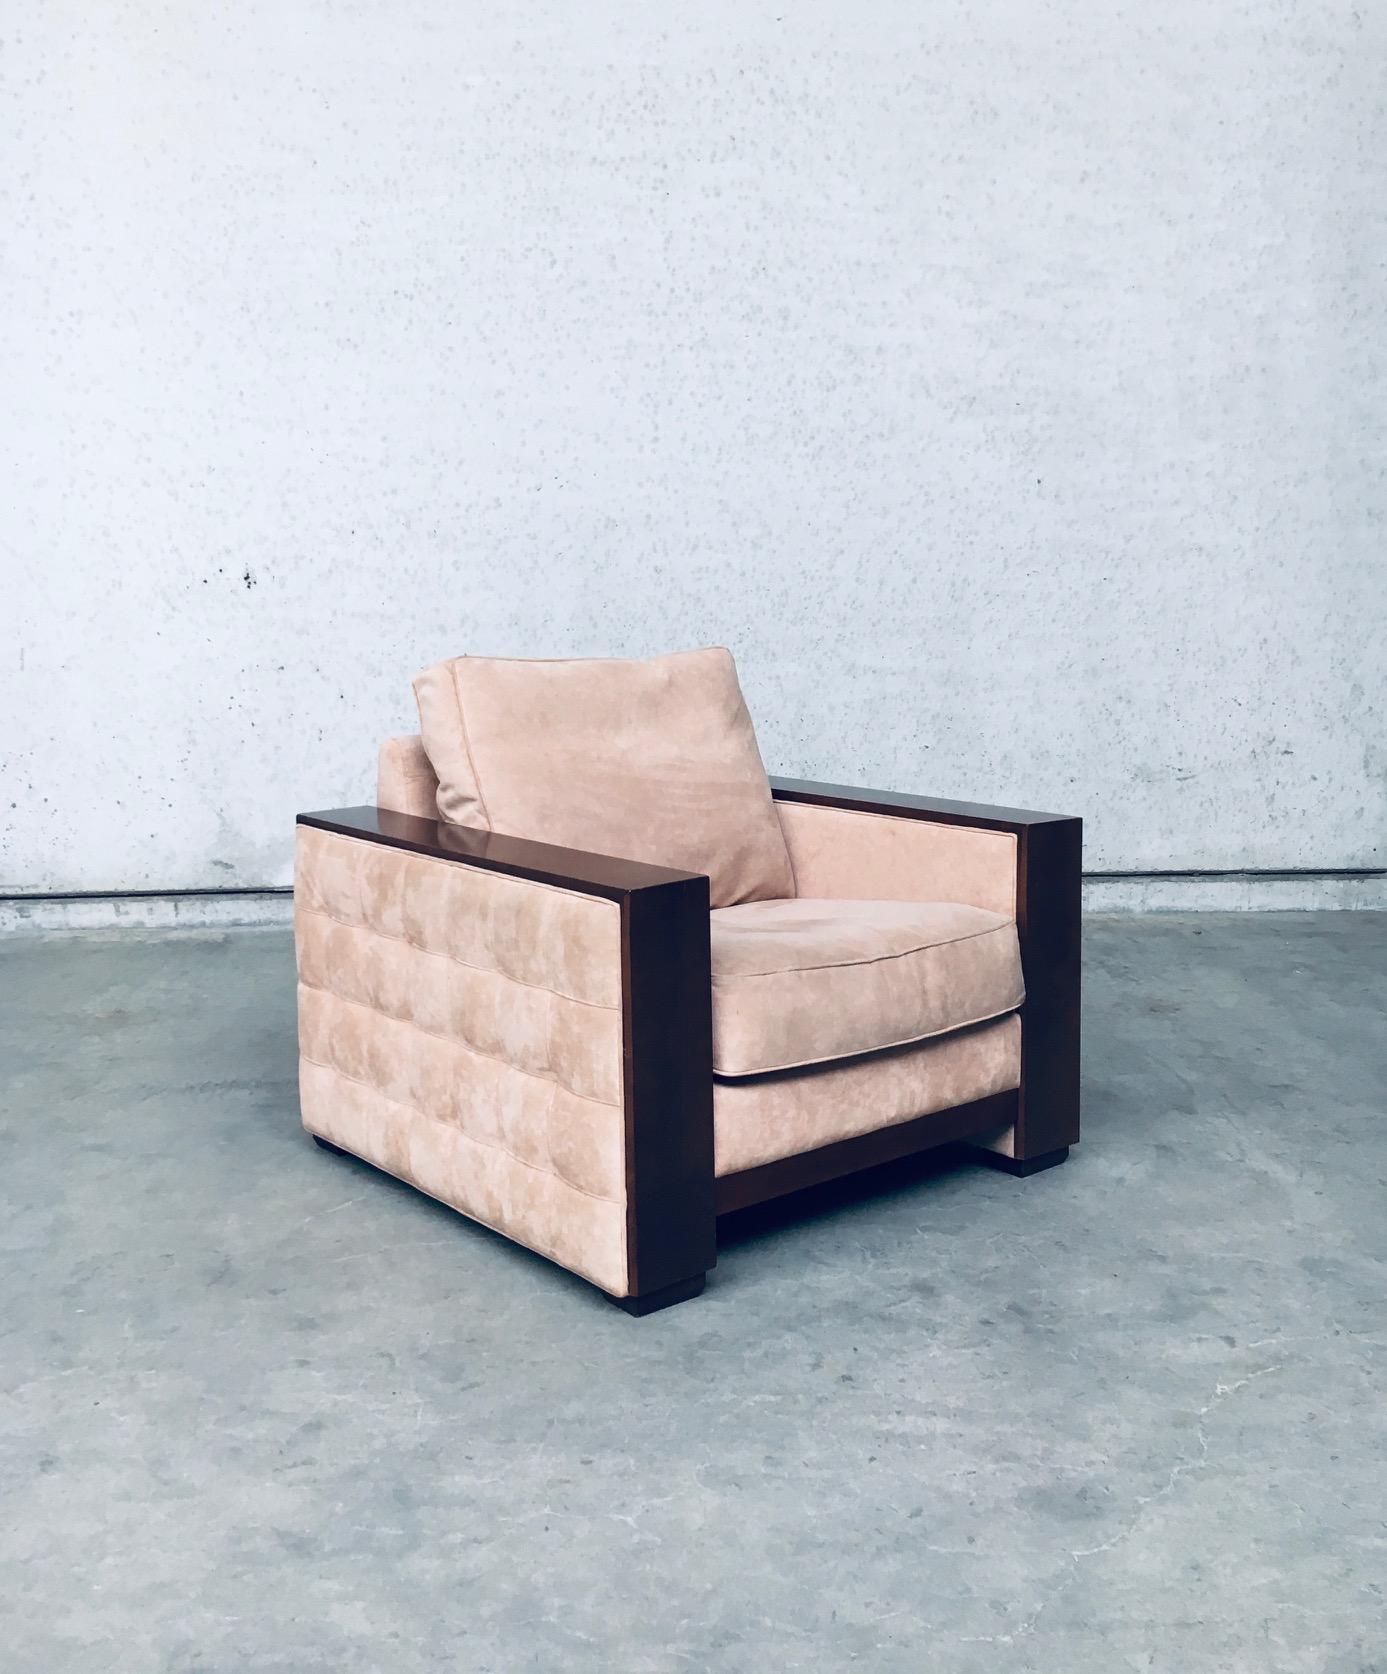 Vintage Postmodern French Design XL Square Fauteuil Lounge Chair by Roche Bobois, made in France 1980's. Cuir suédé alcantara rose saumon avec cadre en bois de hêtre teinté plus foncé. Fauteuil de qualité supérieure en très bon état d'origine.